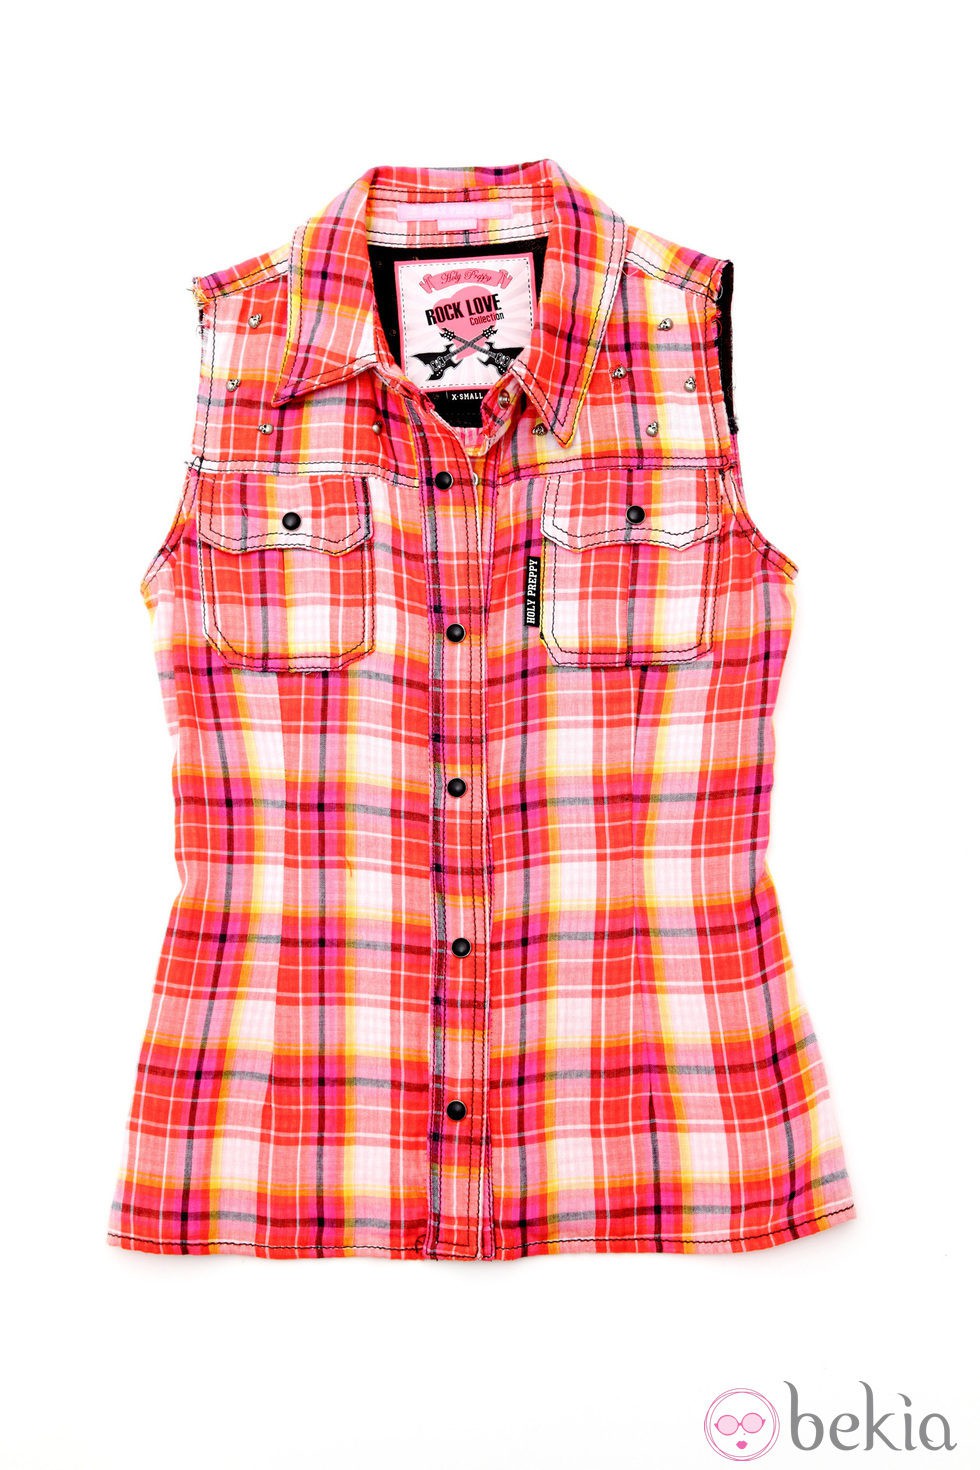 Camisa de cuadros de la línea 'Bad girl' de la colección primavera/verano 2013 de Holy Preppy